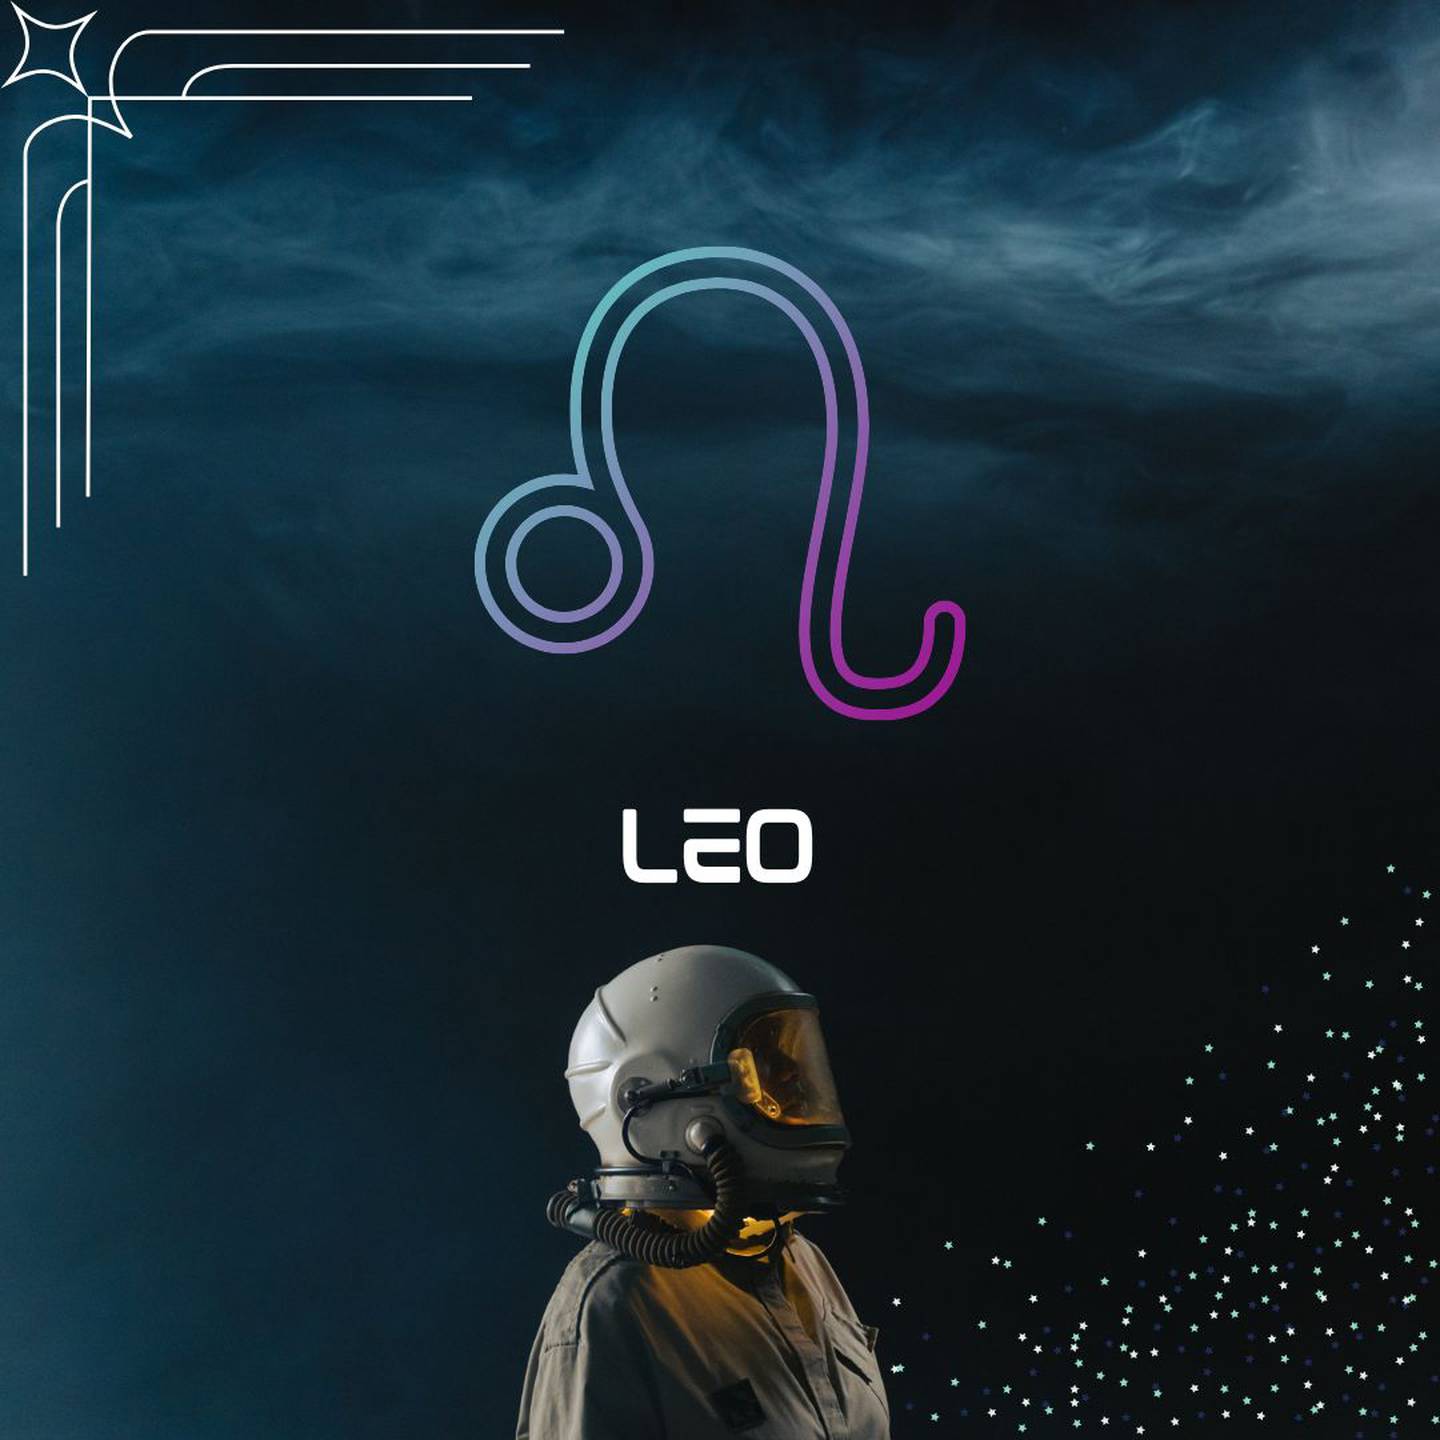 Sobre un fondo oscuro, con humo en la parte superior, aparece el símbolo de Leo. Al centro aparece el nombre del signo en color blanco y todavía más abajo, un astronauta está mirando hacia la derecha.